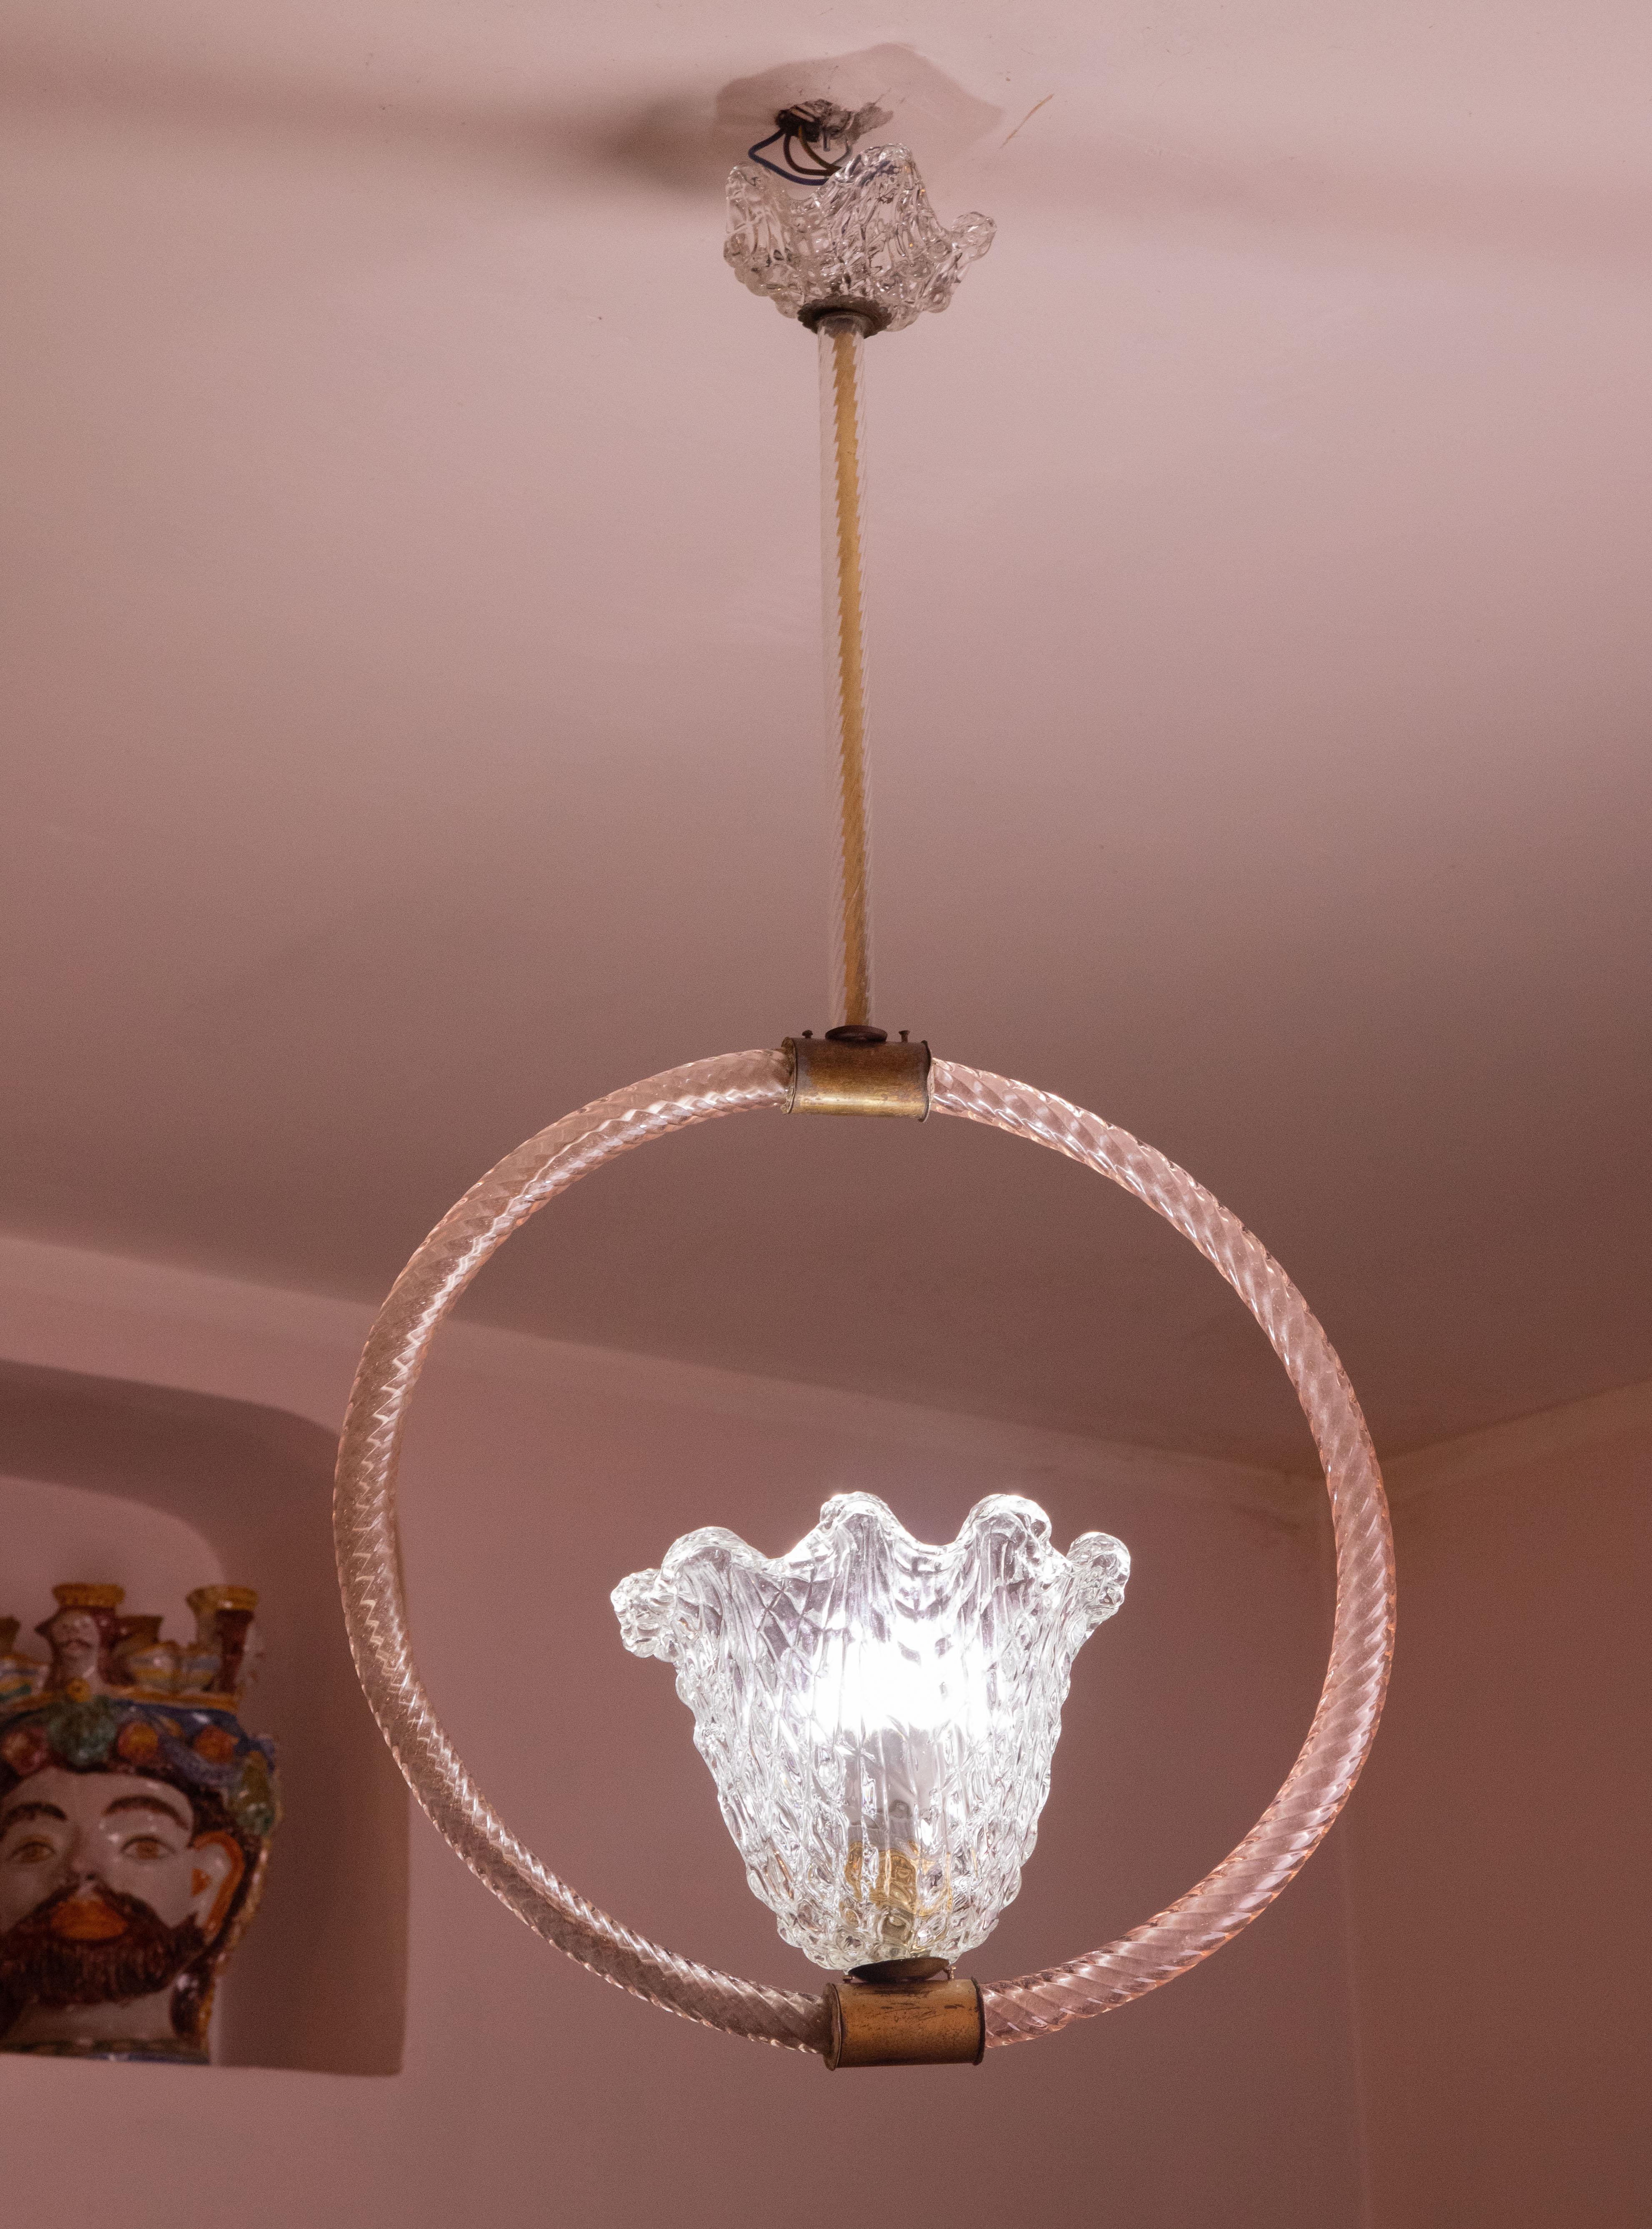 Lustre de Murano attribué aux verreries Barovier et Toso.

Période des années 1940-50.

La particularité du lustre est d'être multicolore, le lustre présente 3 éléments en verre clair et deux en verre rose.

Le lustre monte une lumière et 27 normes